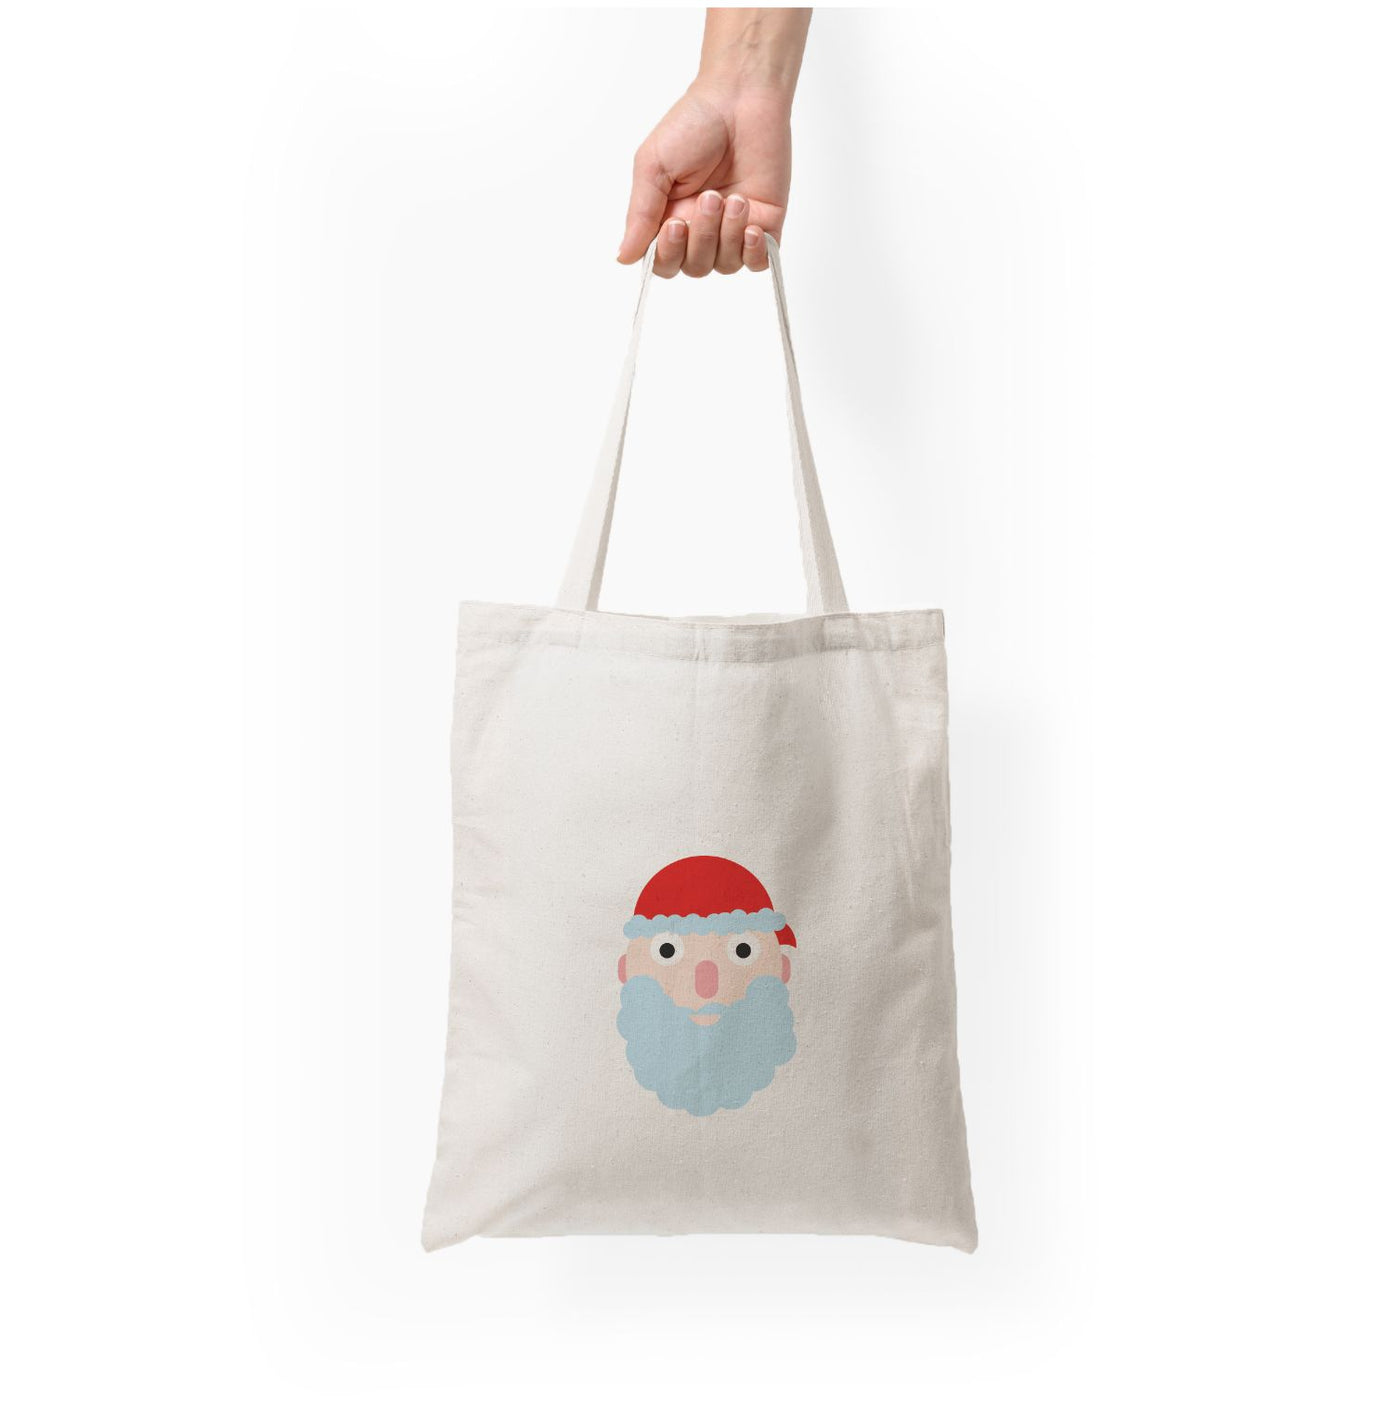 Santa's Face - Christmas Tote Bag